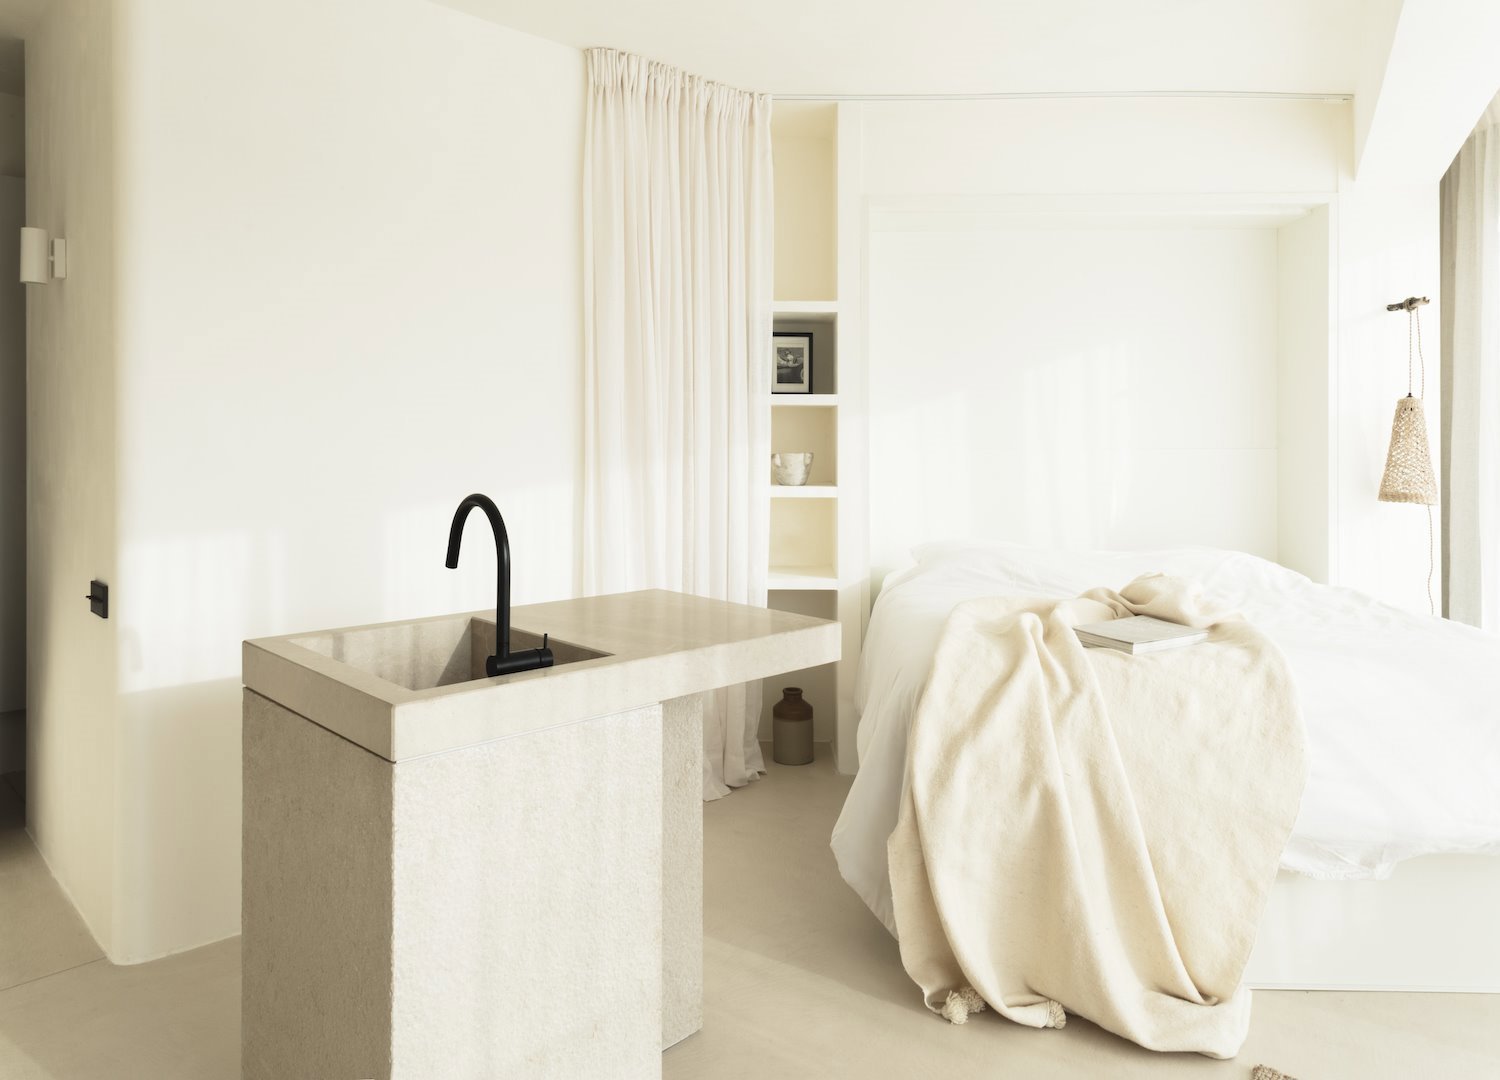 mini piso en color blancobano dormitorio 8356e778   ec8a246c